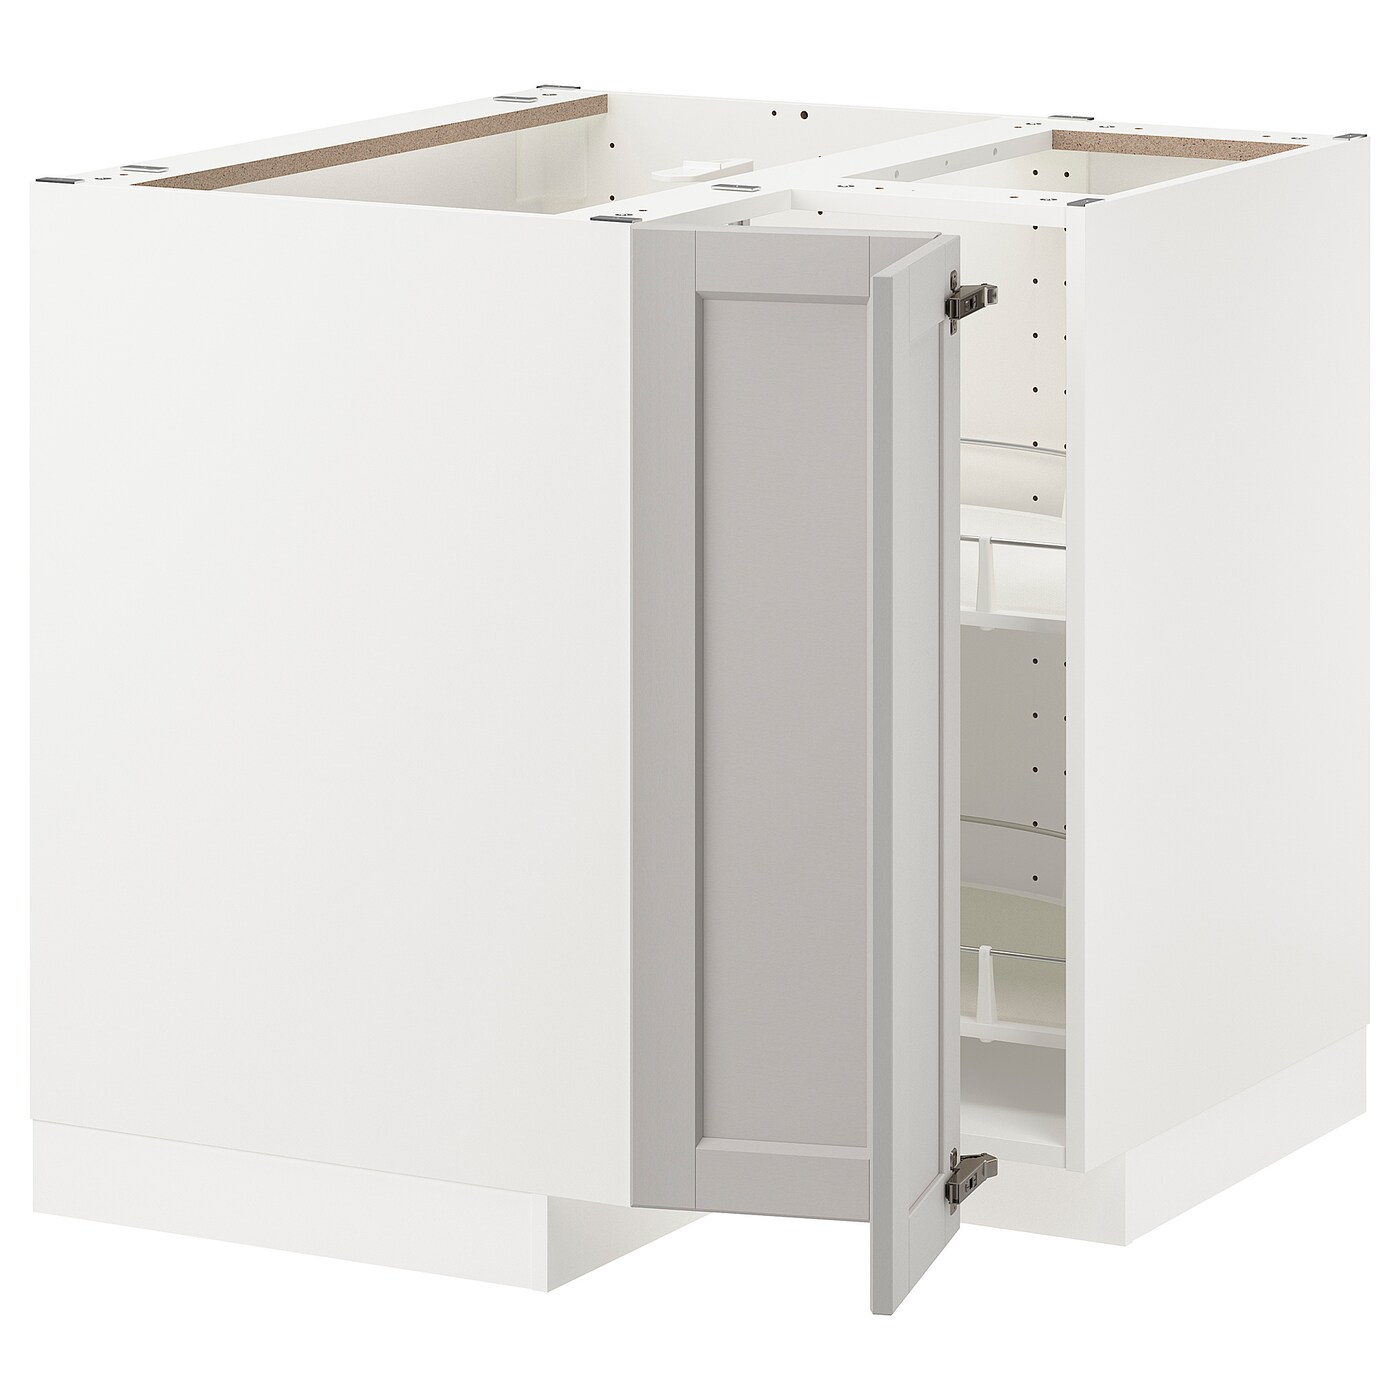 Напольный шкаф - IKEA METOD, 88x80x87,5см, белый/светло-бежевый, МЕТОД ИКЕА